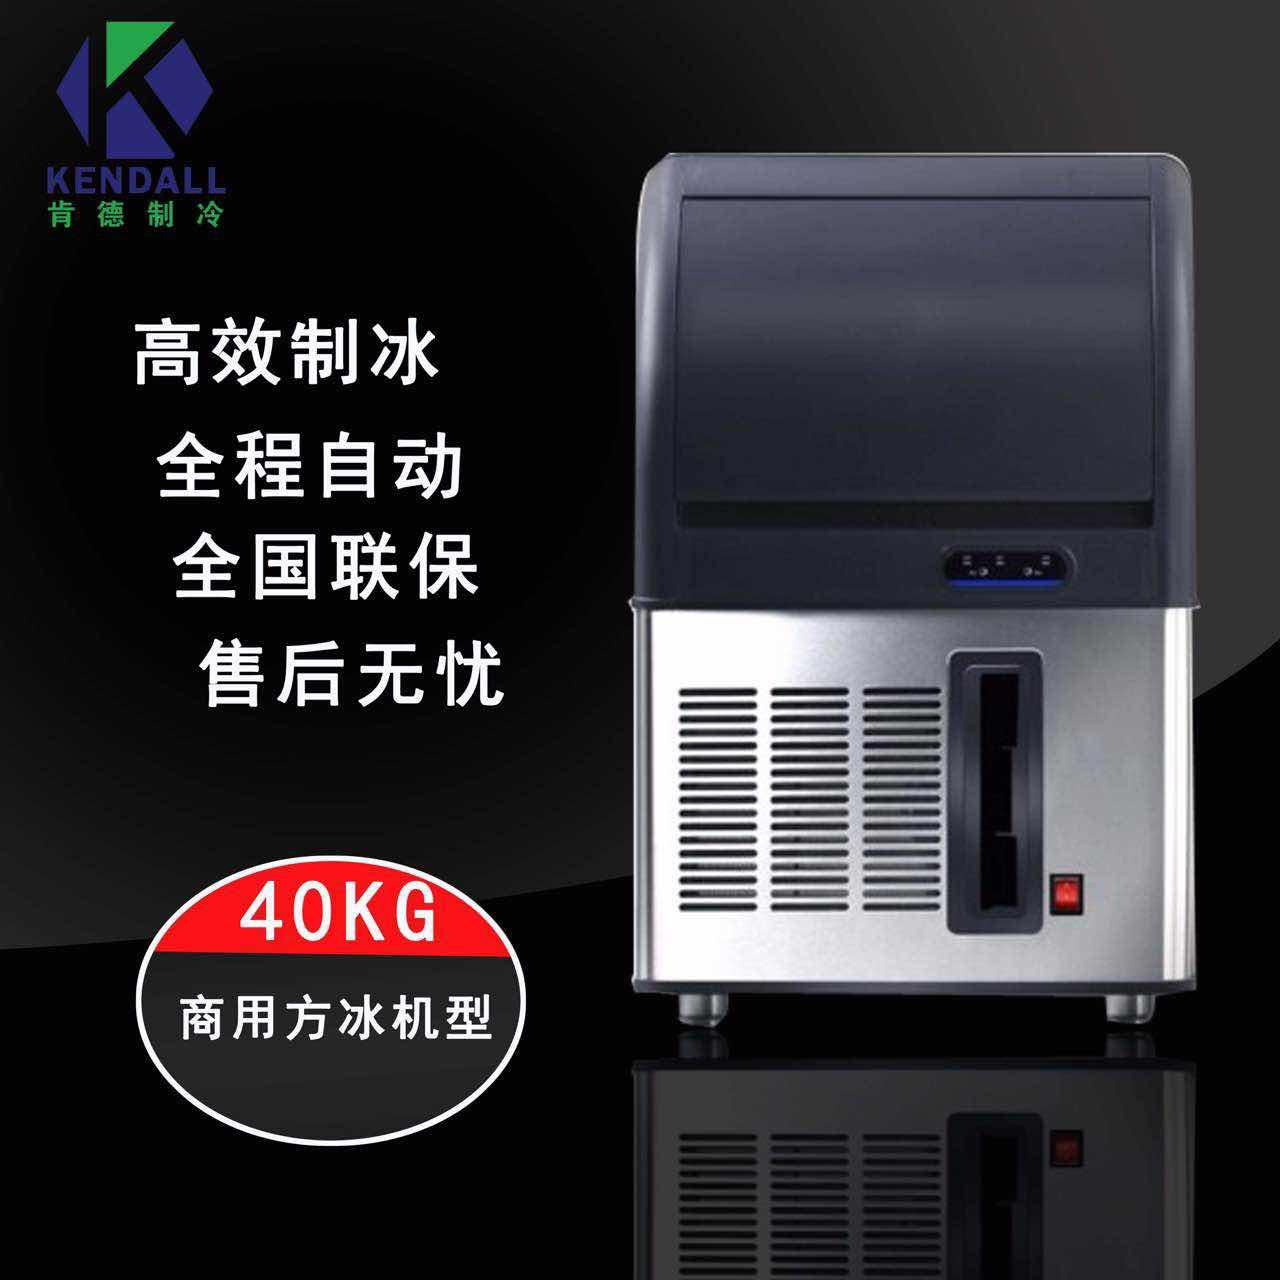 肯德高端商用40kg公斤制冰机  奶茶店酒吧KTV全自动制冰机